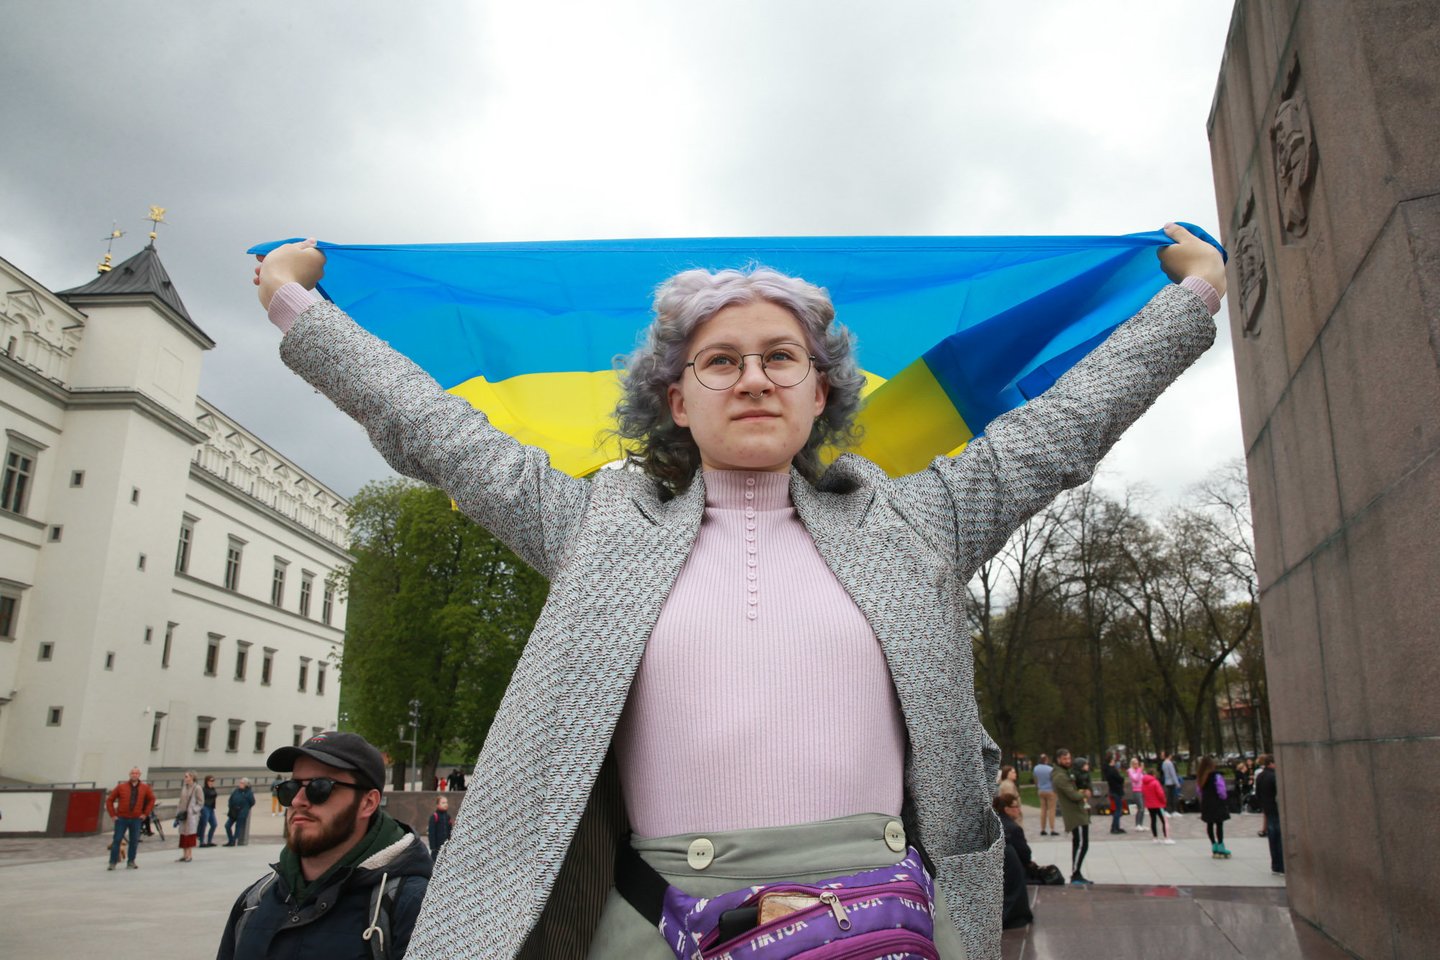  Ukrainos palaikymo akcija Vilniuje.<br> R.Danisevičiaus nuotr.